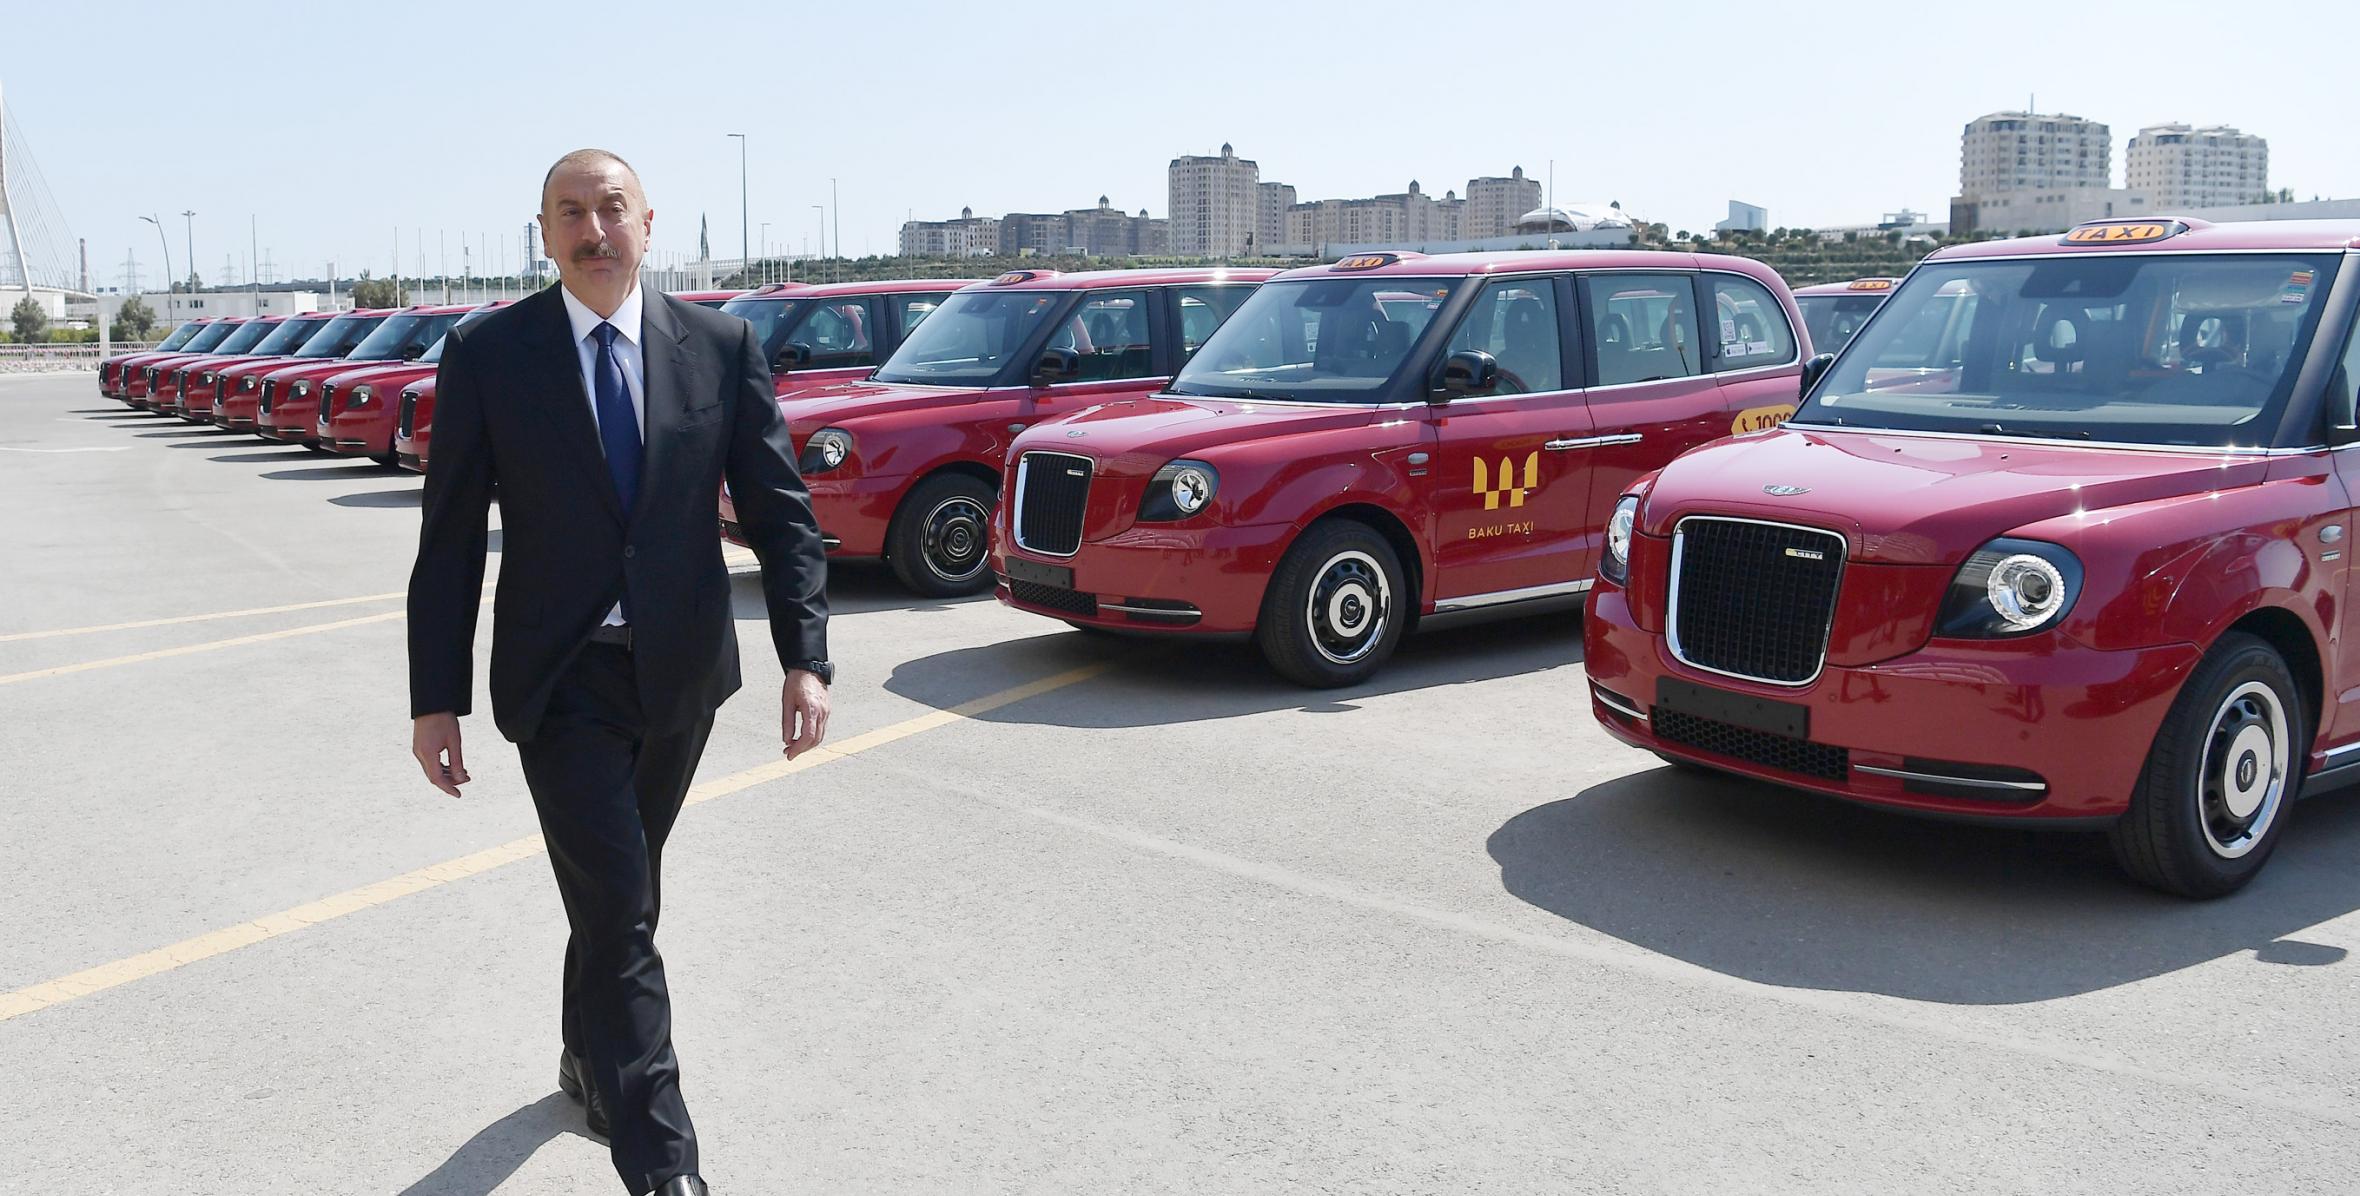 Ильхам Алиев ознакомился с доставленными в Баку новыми «лондонскими такси» модели LEVC ТХ